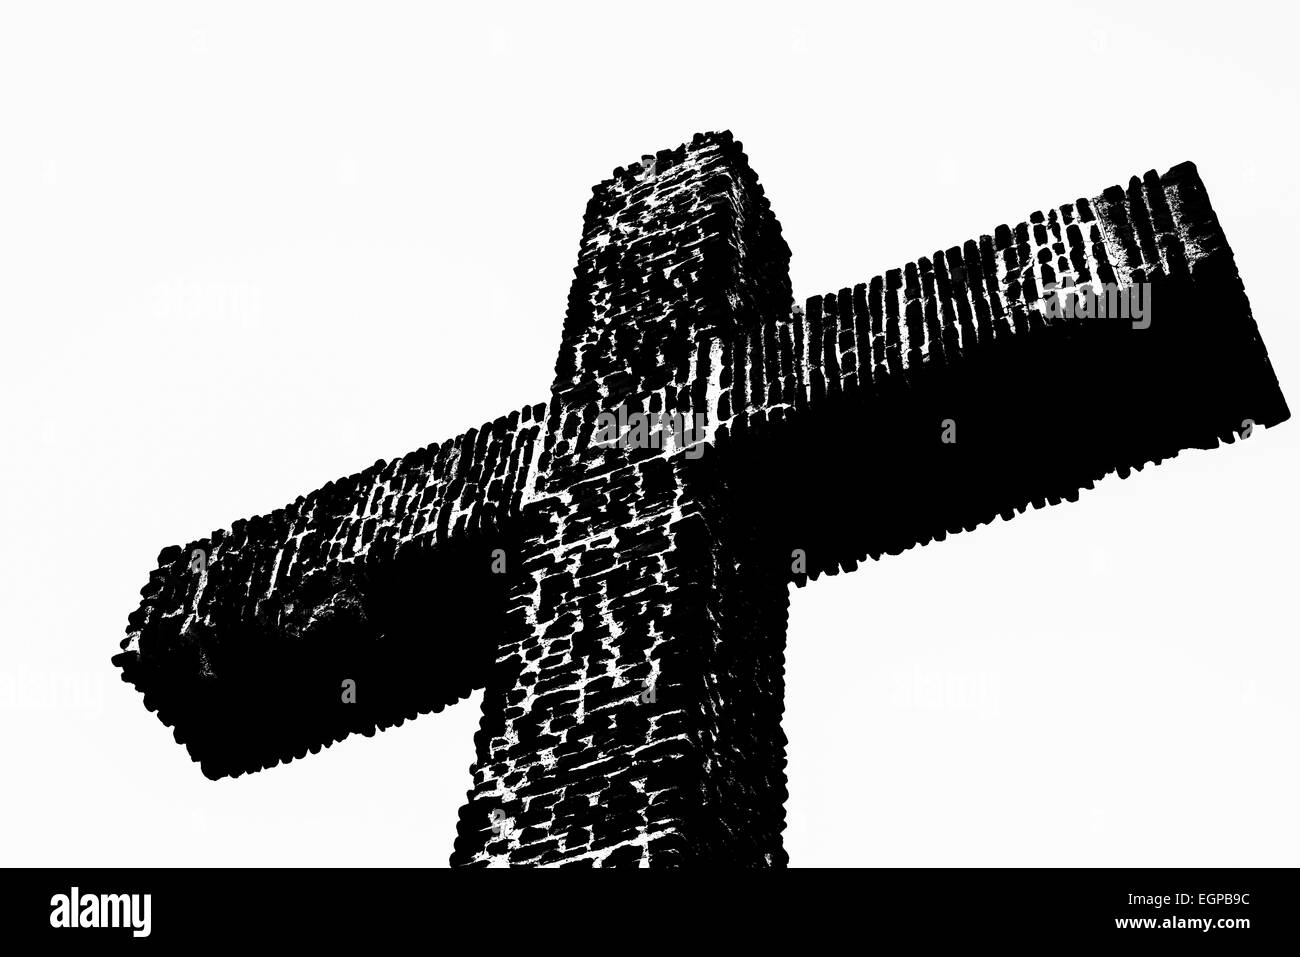 Das Serra-Kreuz in schwarzen und weißen Silhouette Effekt.  Presidio Park, San Diego, Kalifornien, Vereinigte Staaten von Amerika. Stockfoto